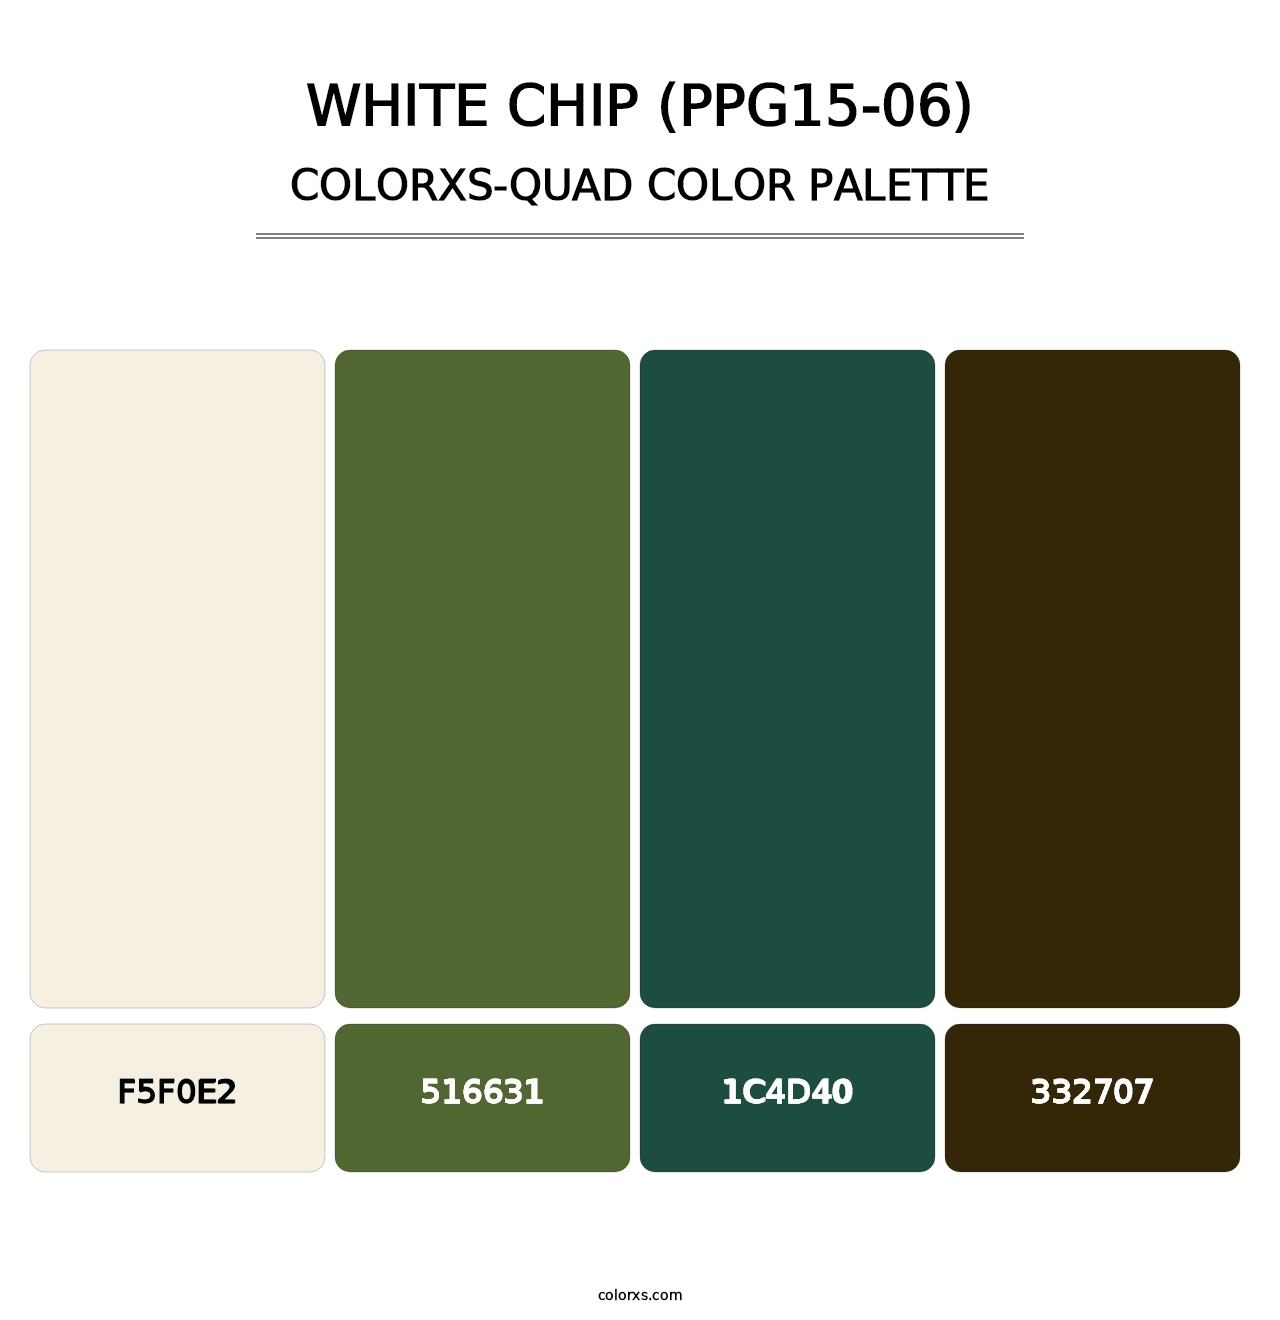 White Chip (PPG15-06) - Colorxs Quad Palette